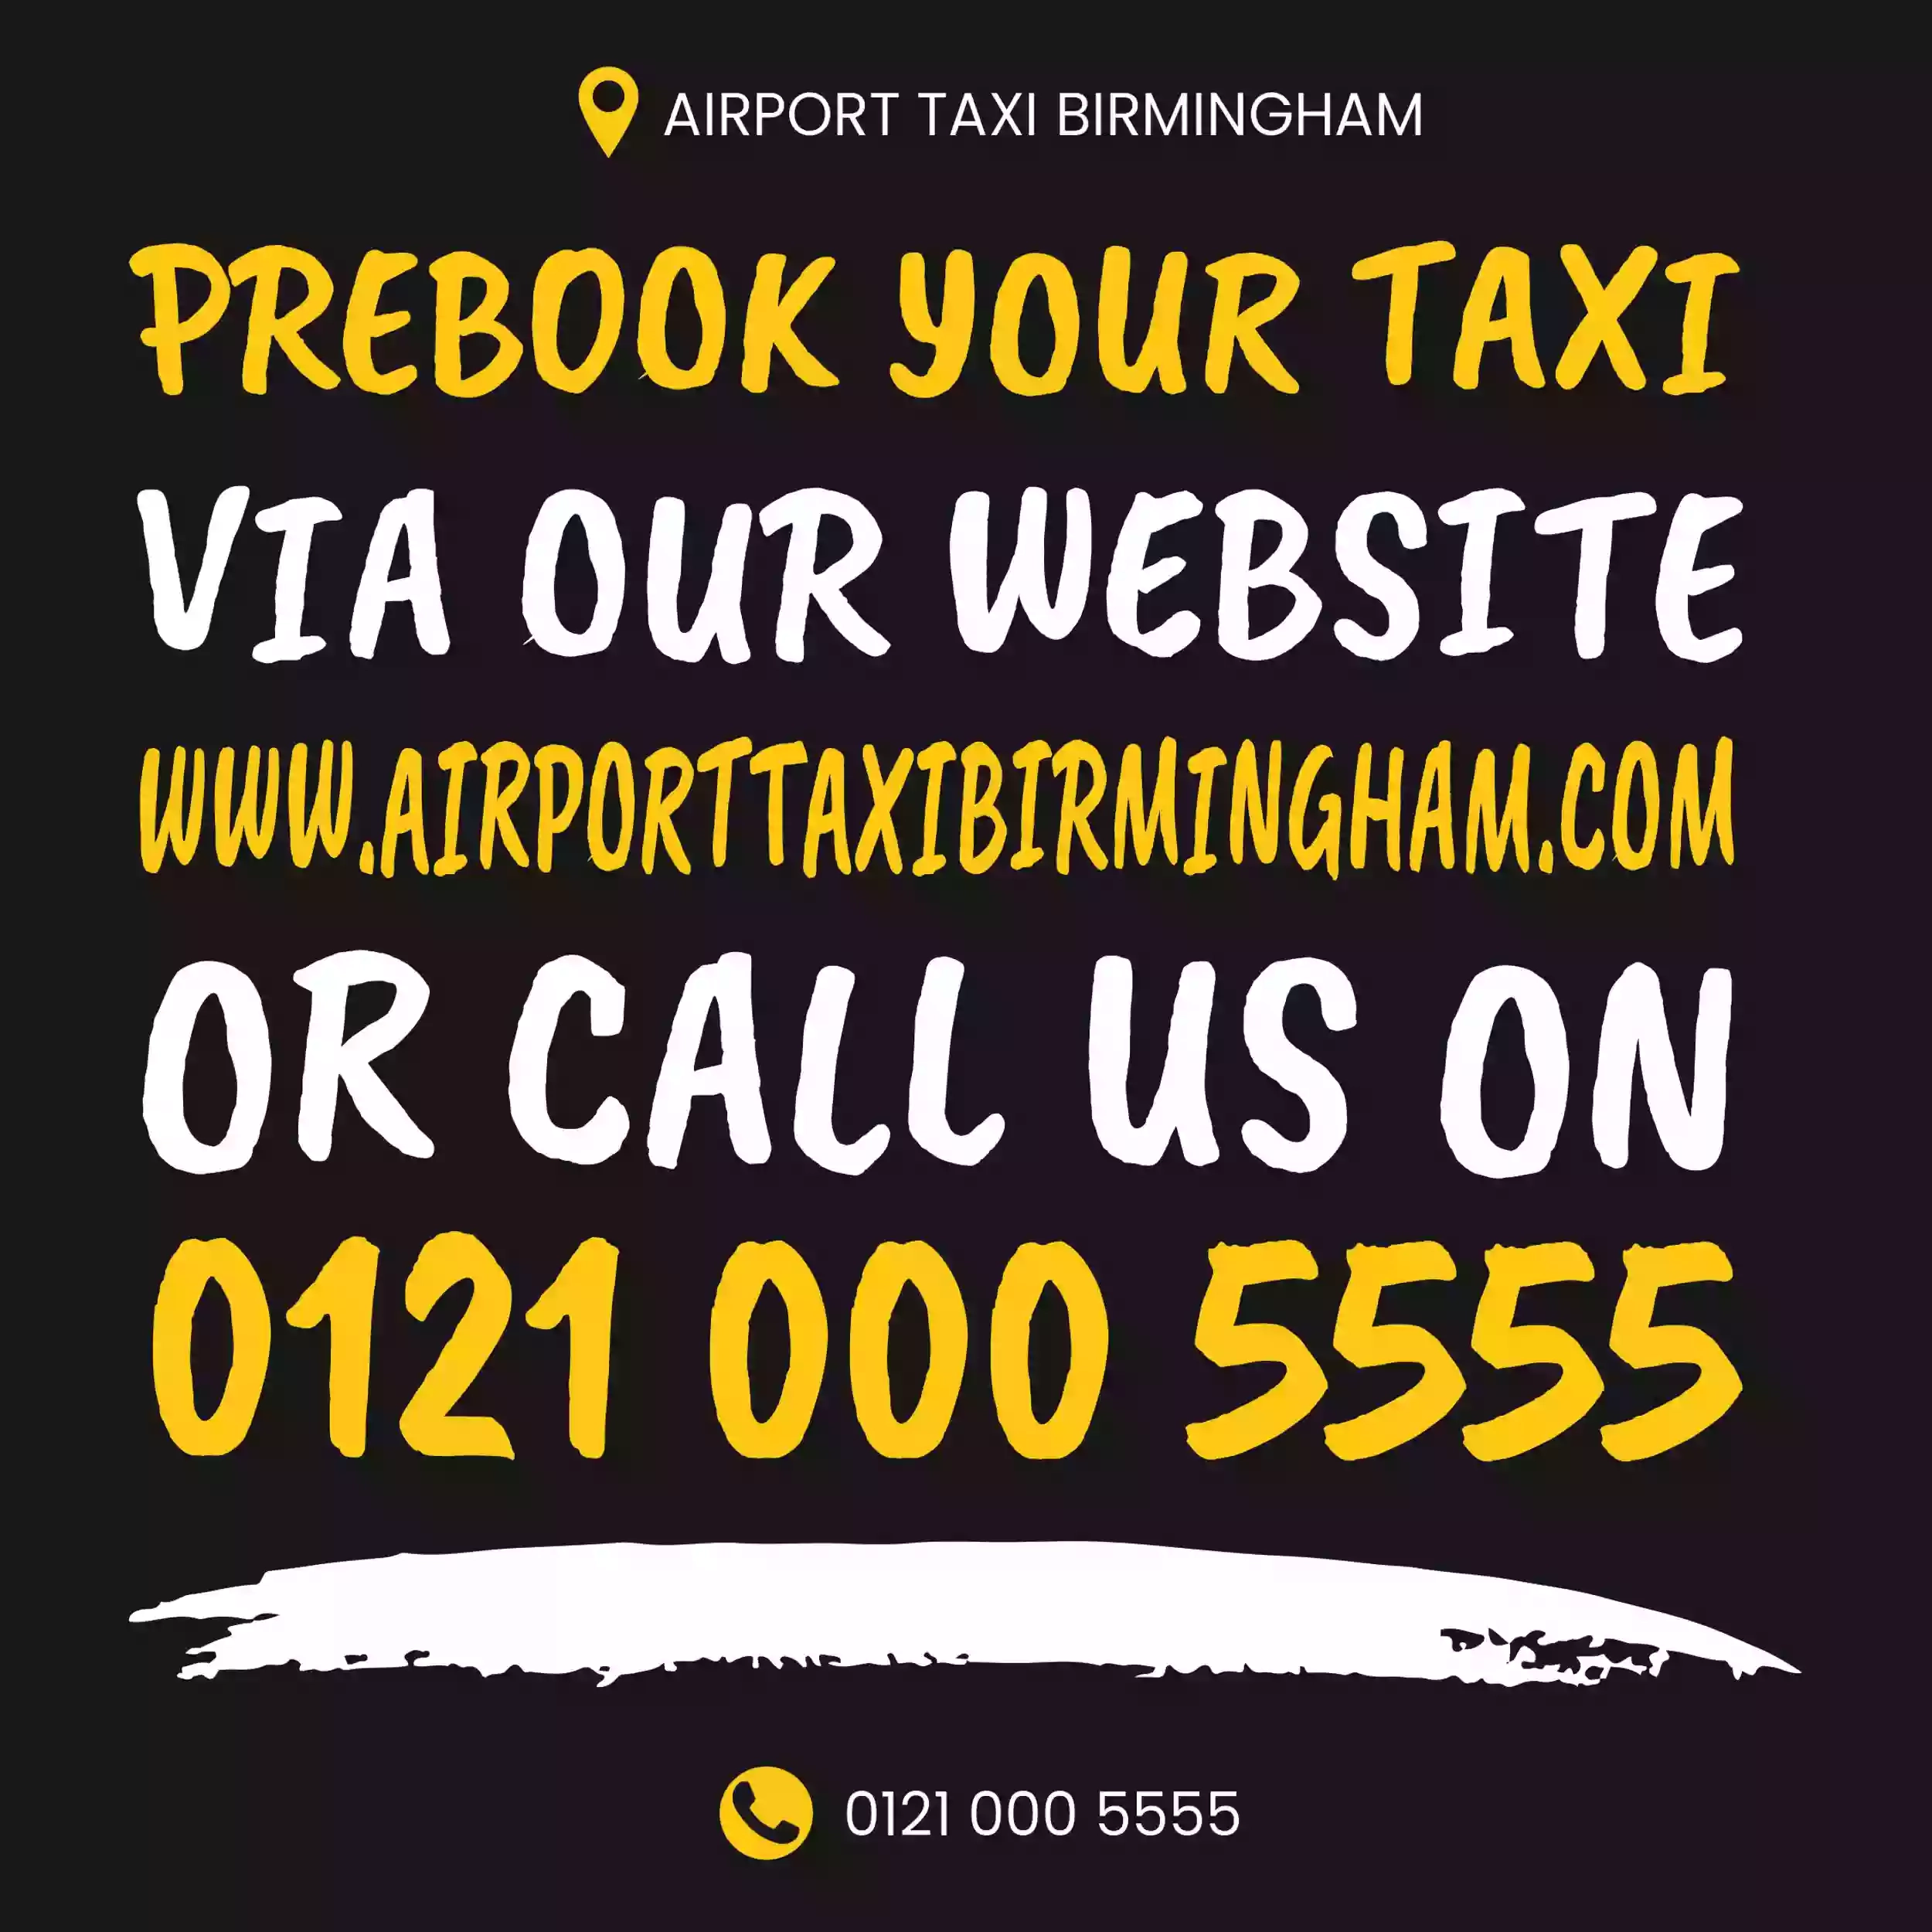 Airport Taxi Birmingham